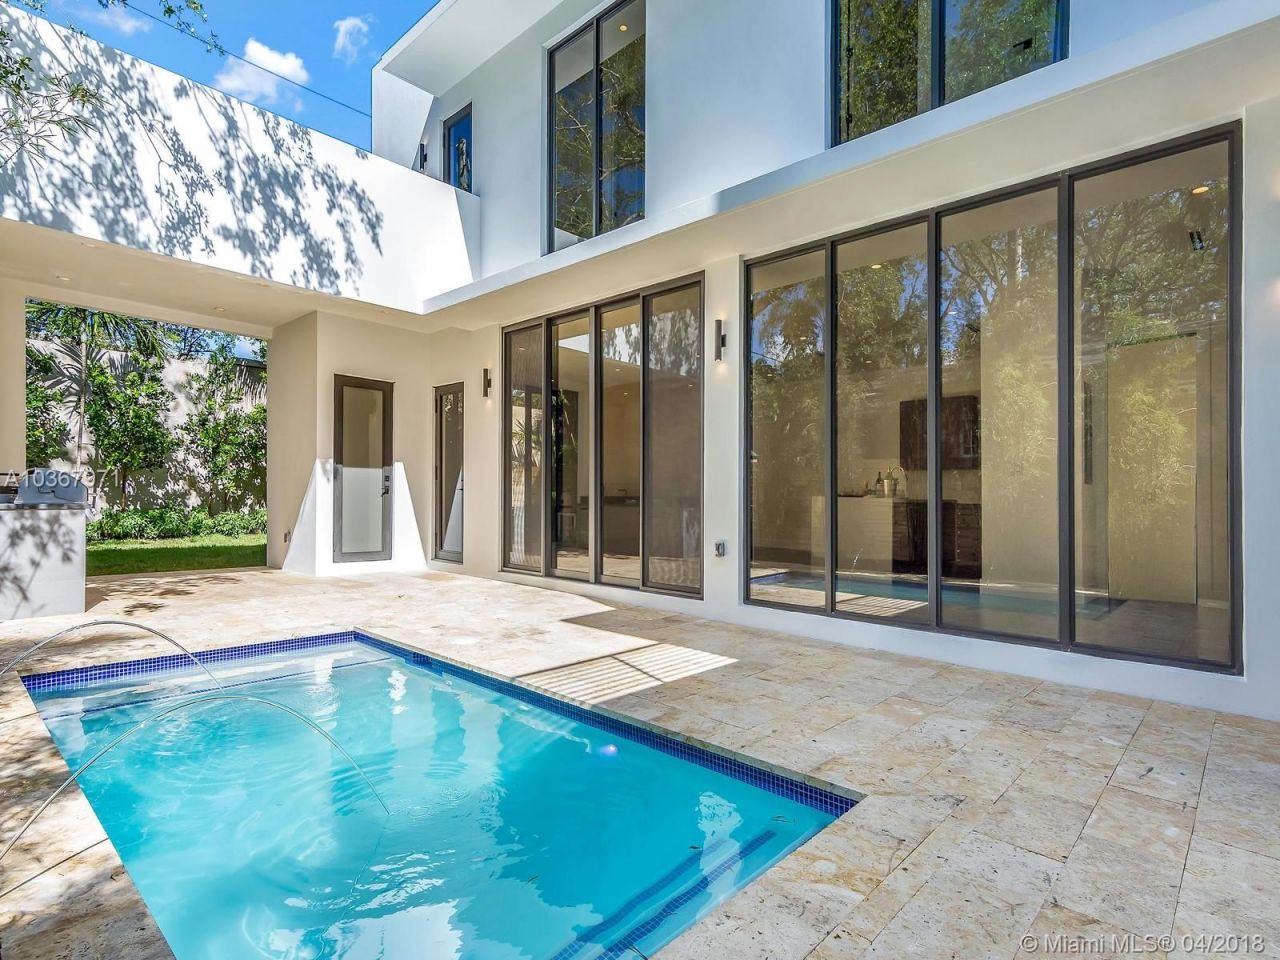 Villa in Miami, USA, 285 m2 - Foto 1